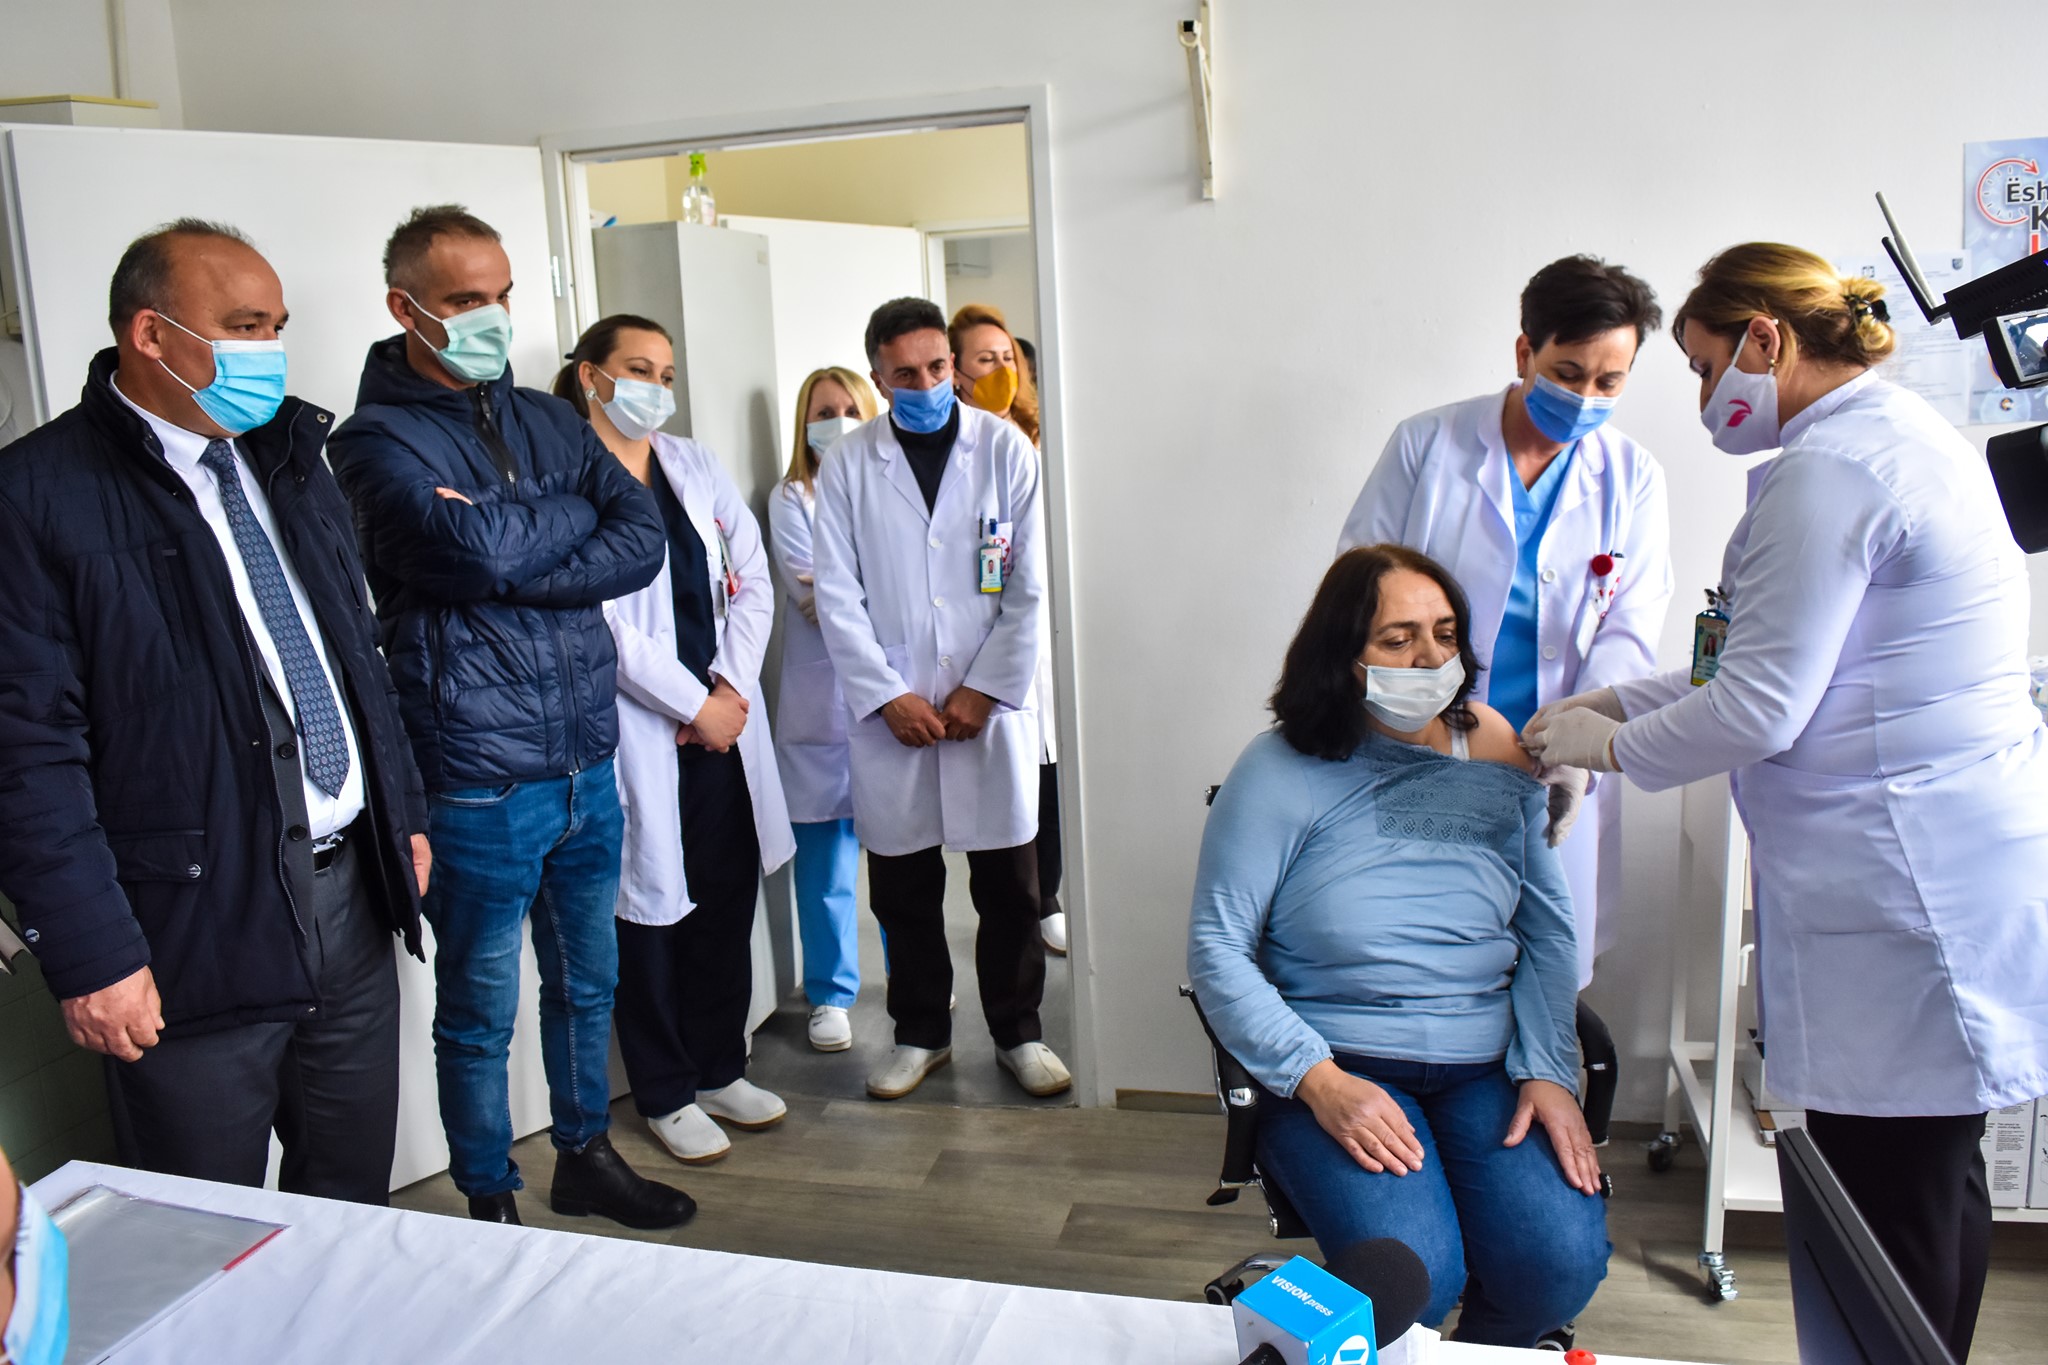  Komuna e Podujevës: Javën e ardhshme fillon vaksinimi masiv, qendër e vaksinimit është caktuar salla e sporteve e shkollës “Xheladin Rekaliu”.